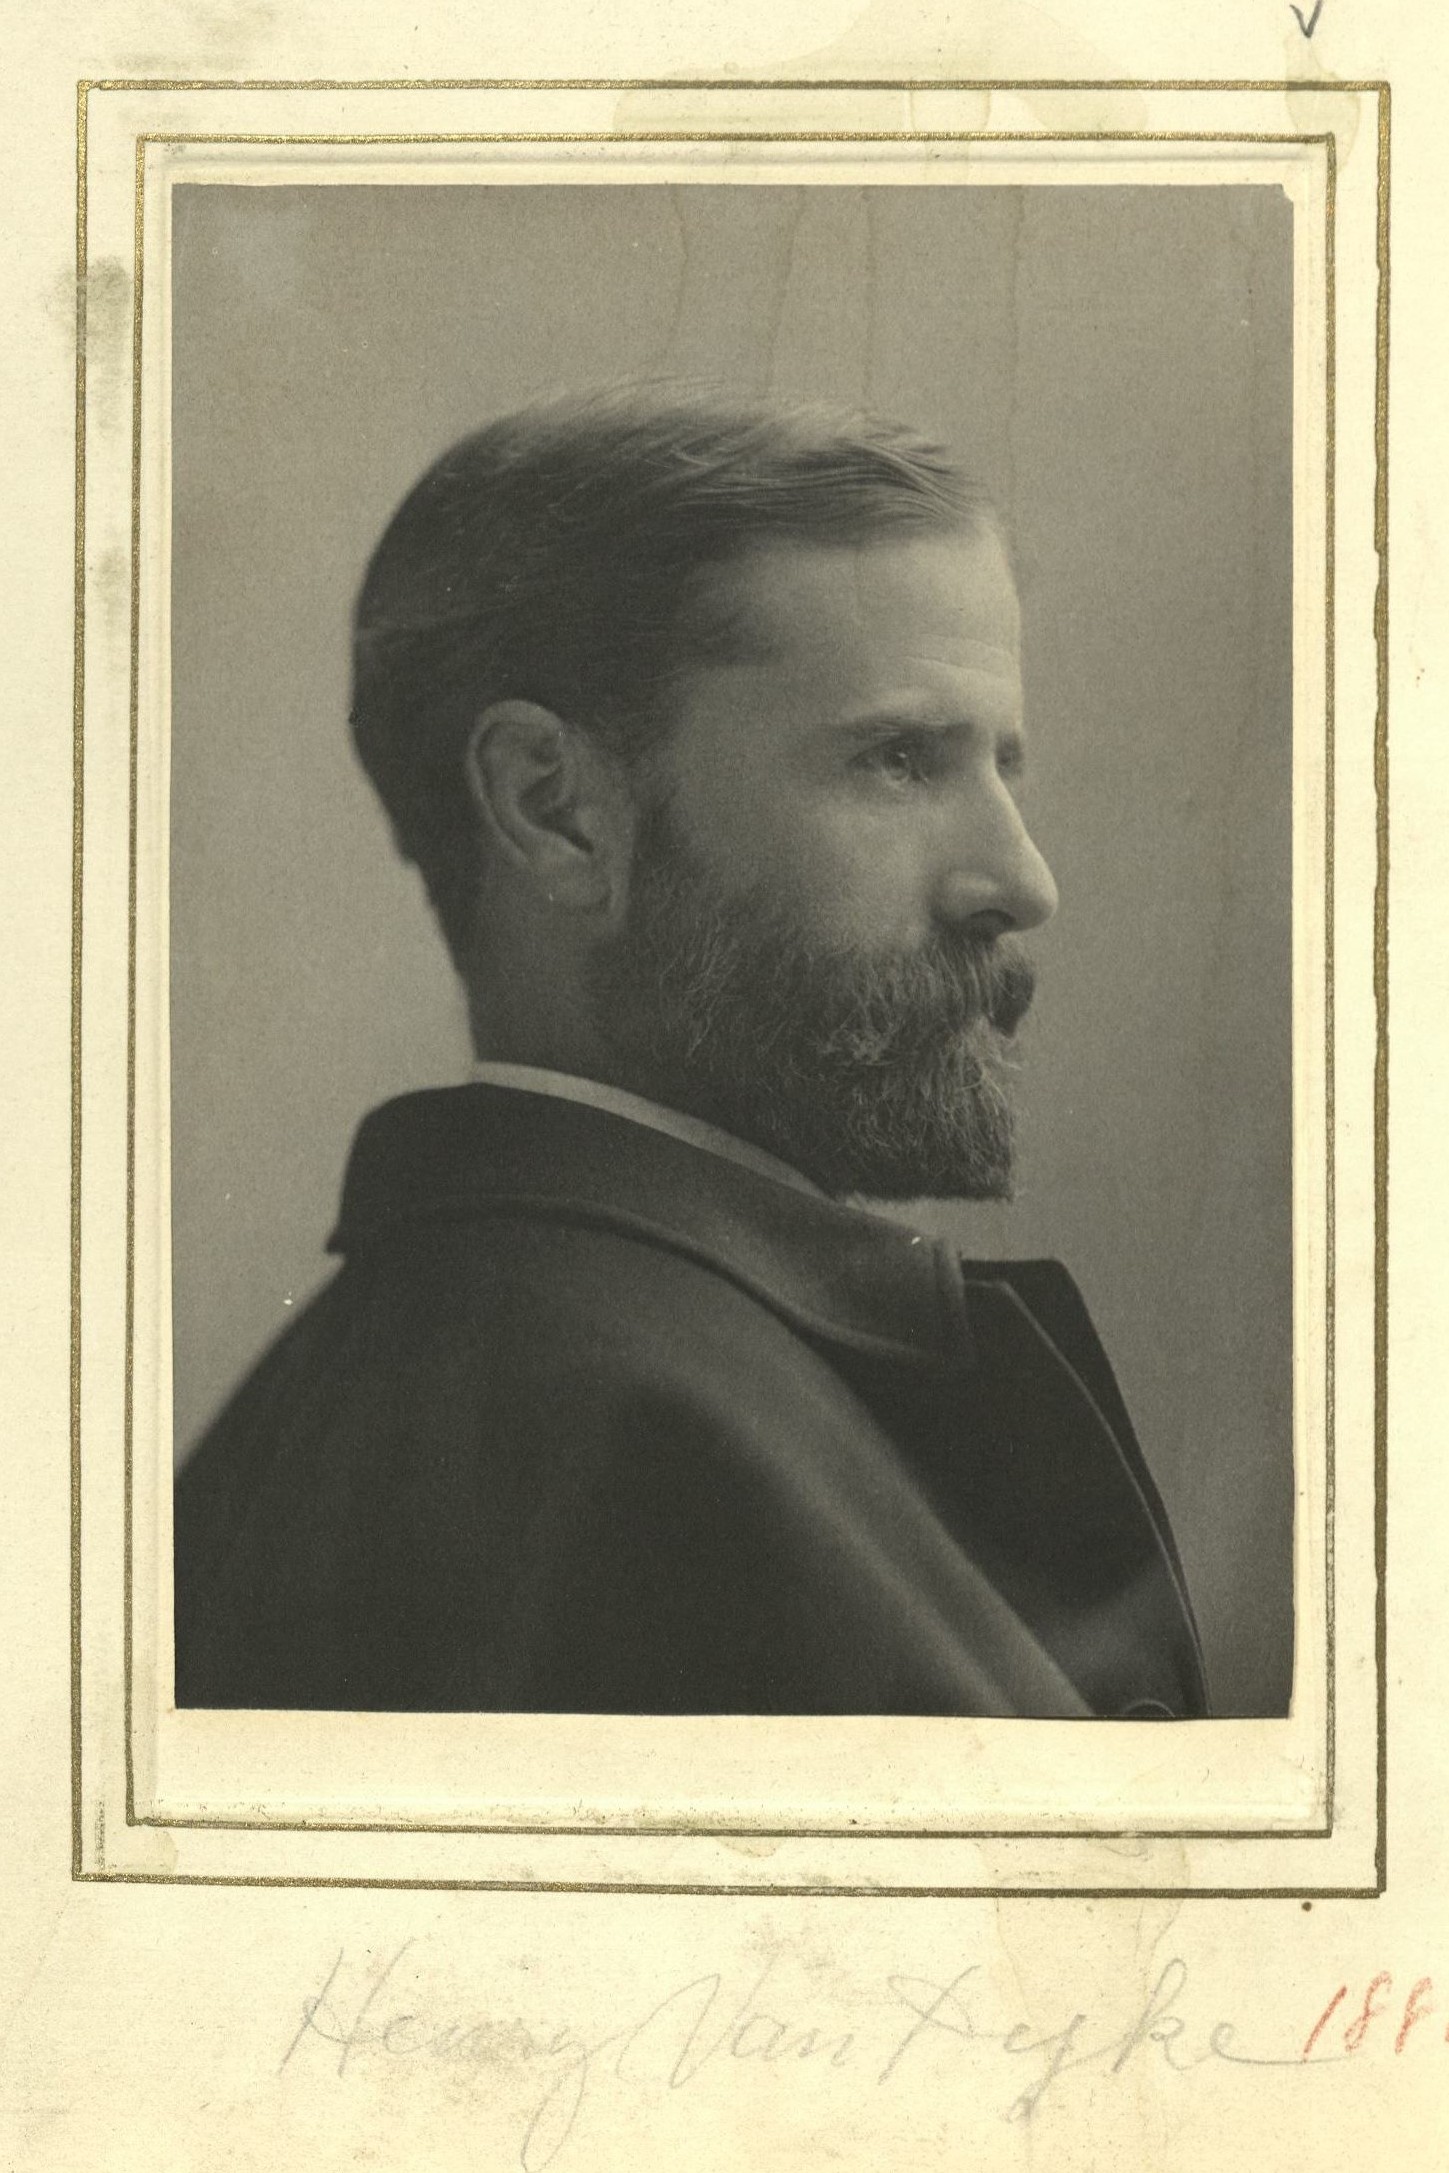 Member portrait of Henry van Dyke